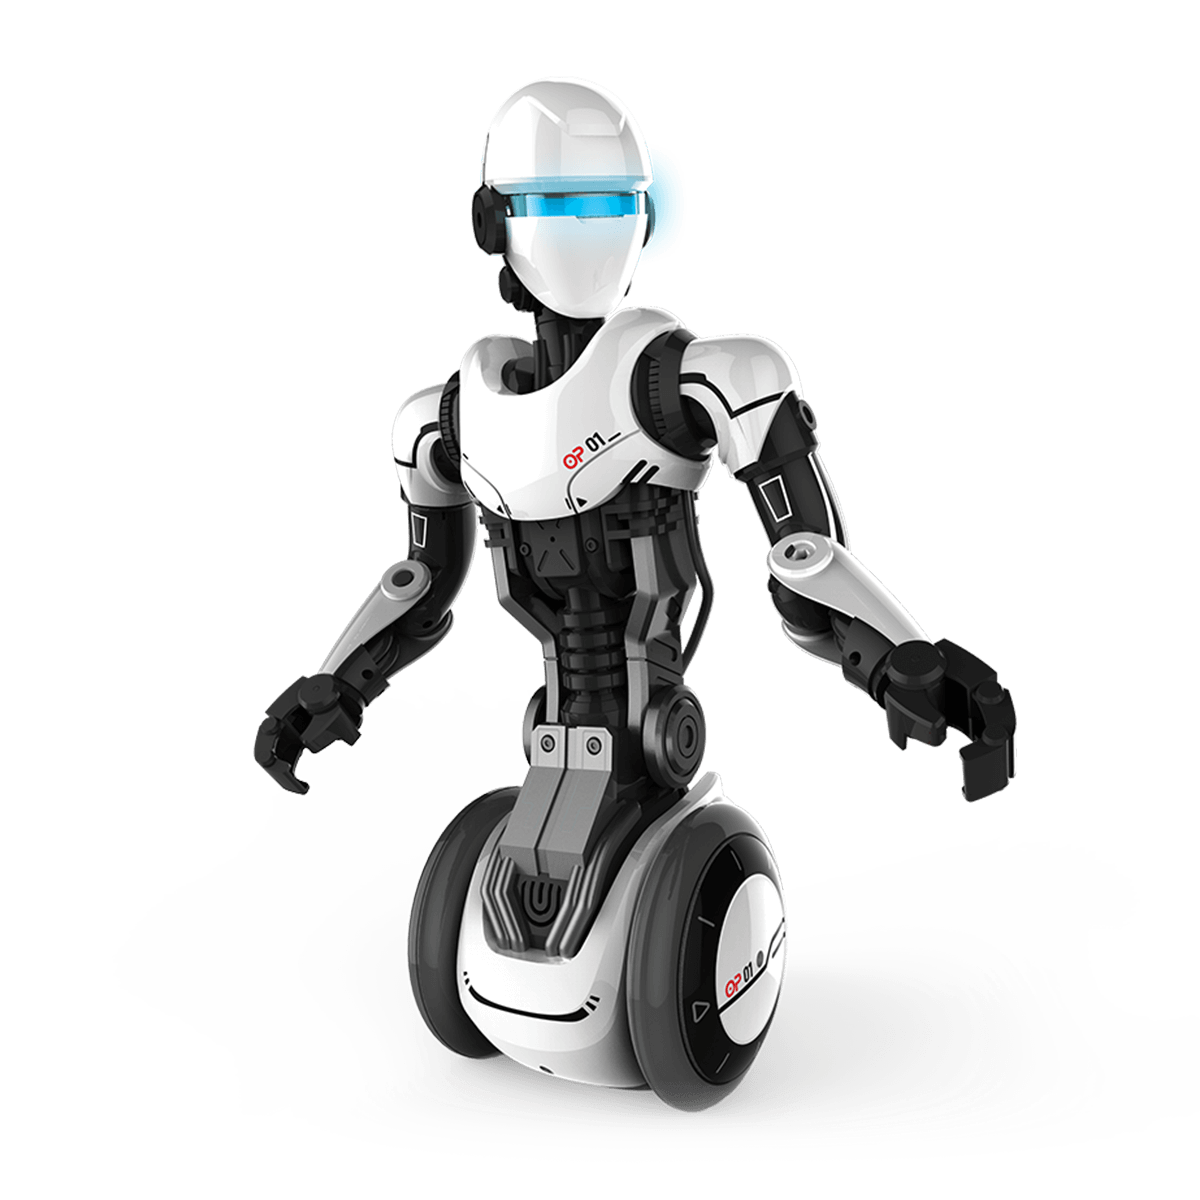 YCOO - ROBOT BLAST - Robot d'action télécommandé pour enfant Blast